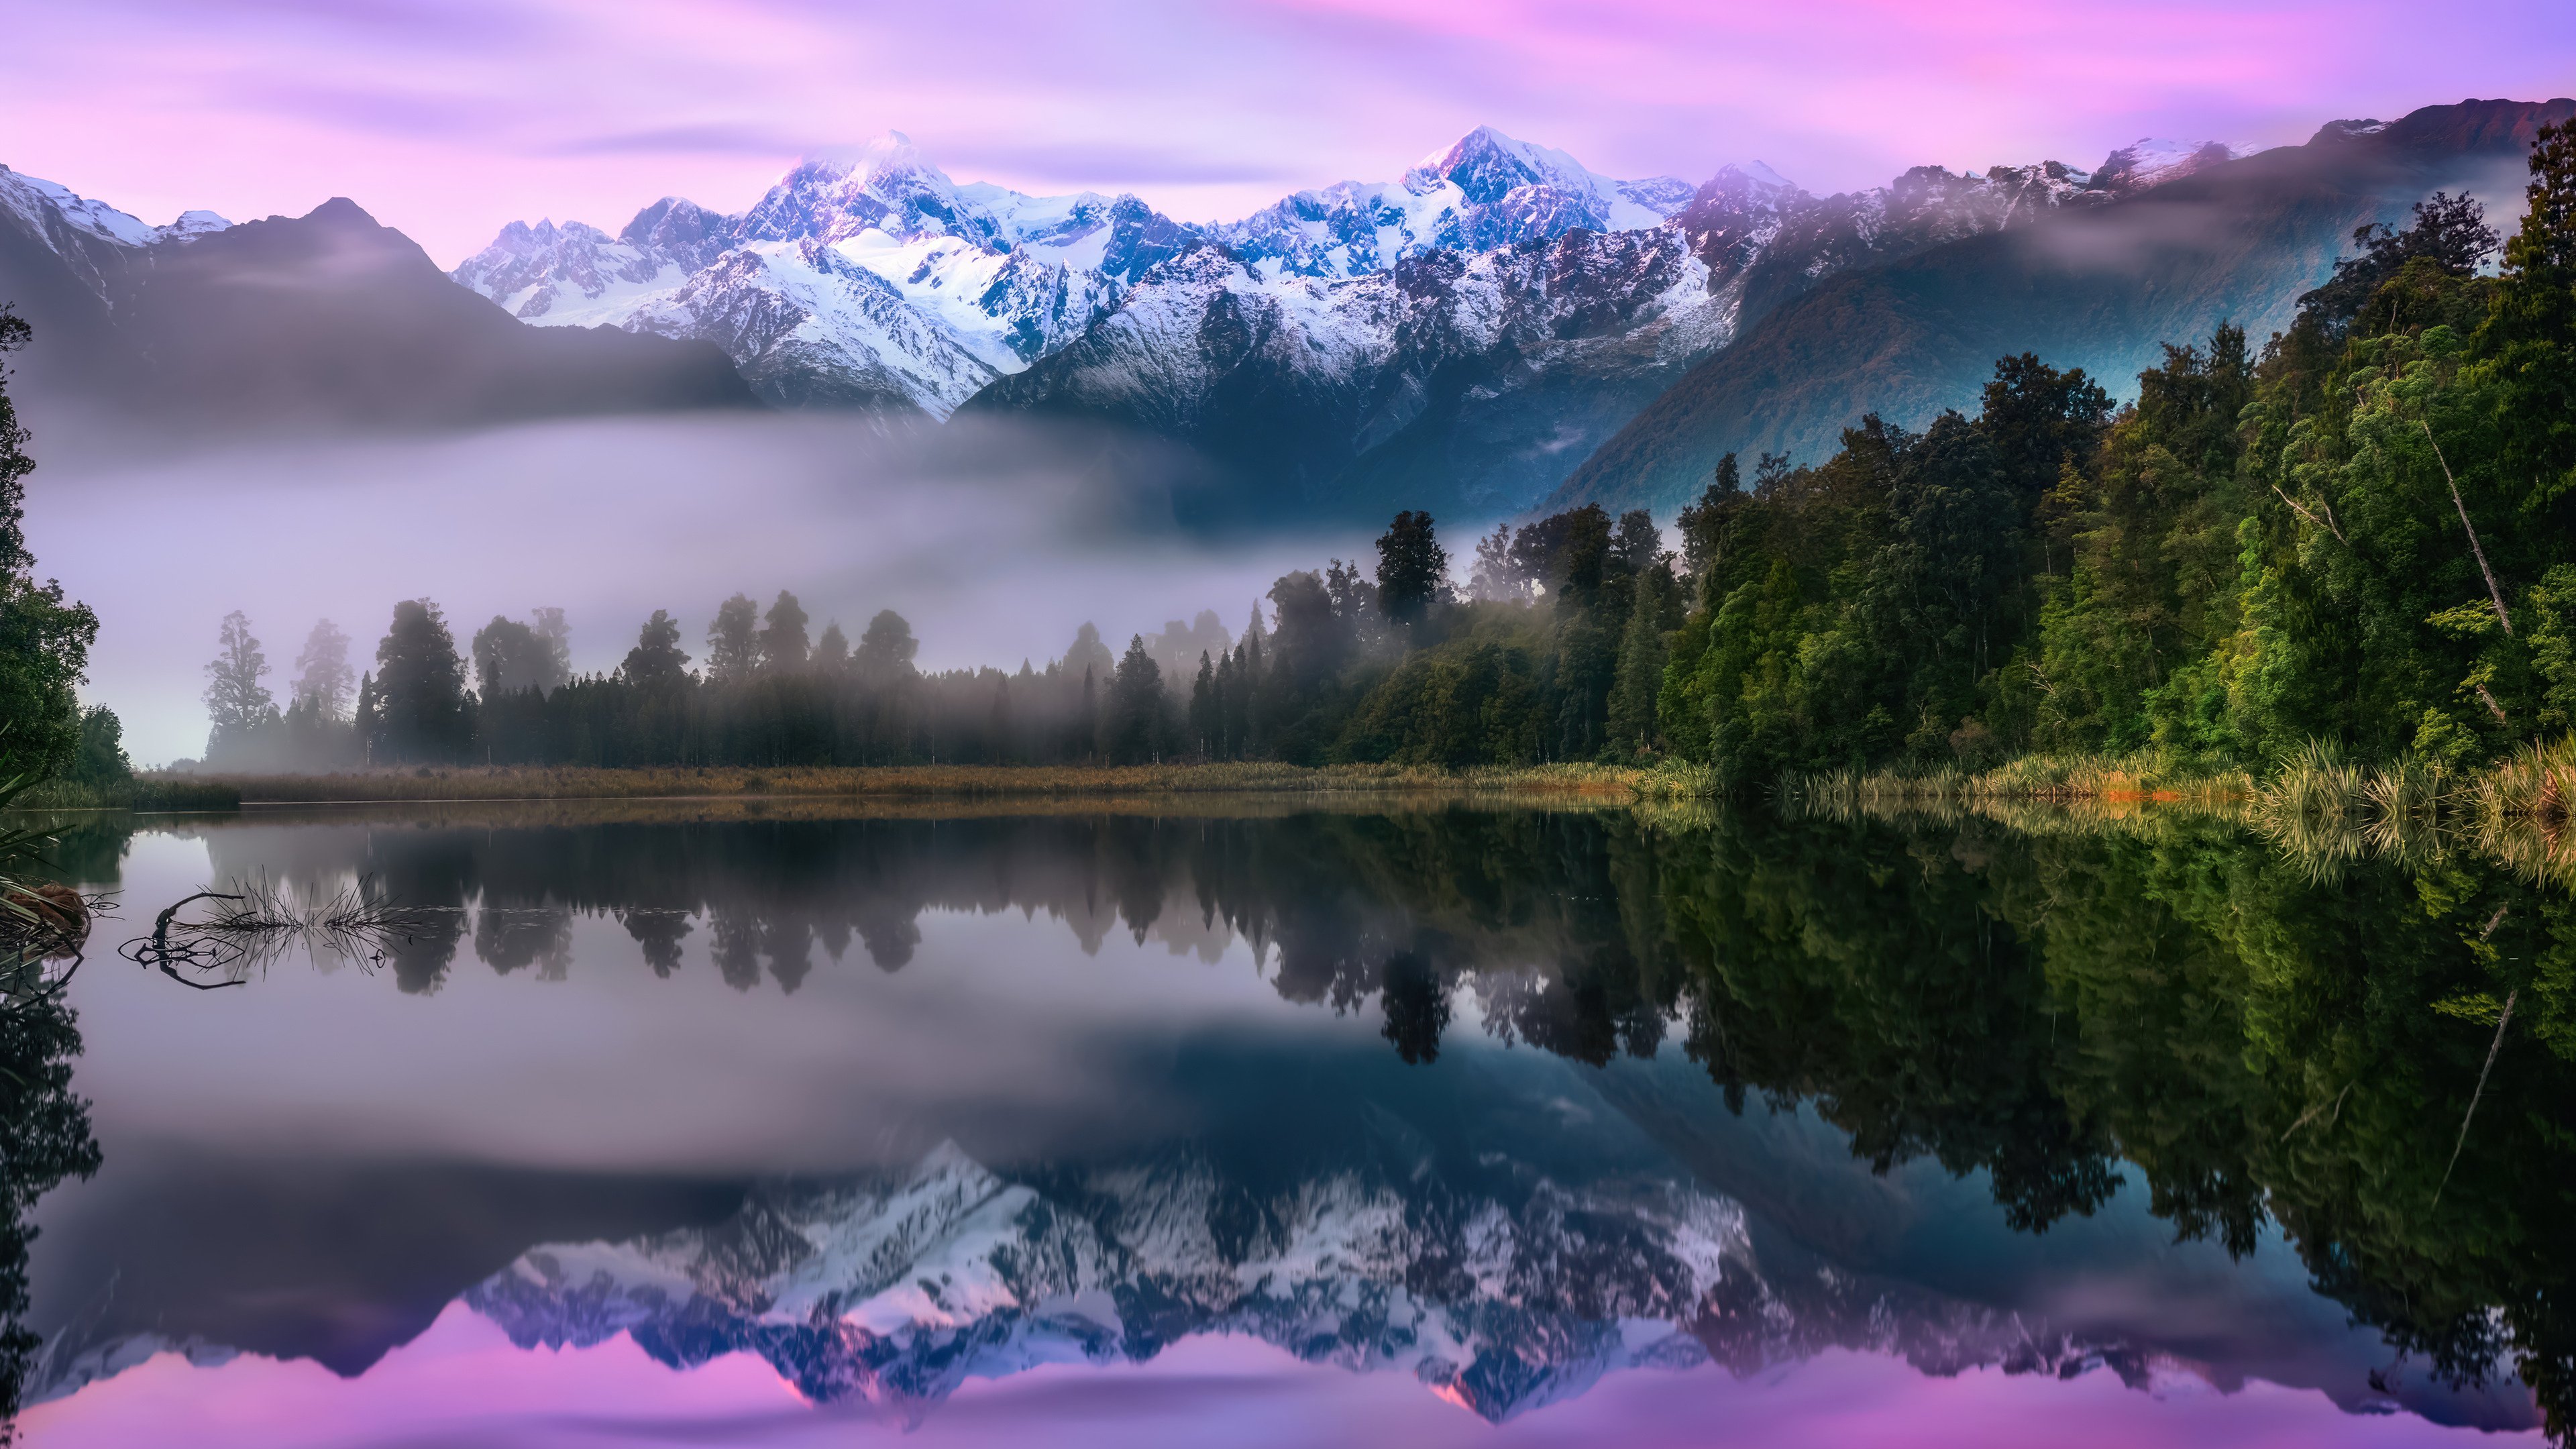 Fondos de pantalla Reflejo de montañas y pinos en lago